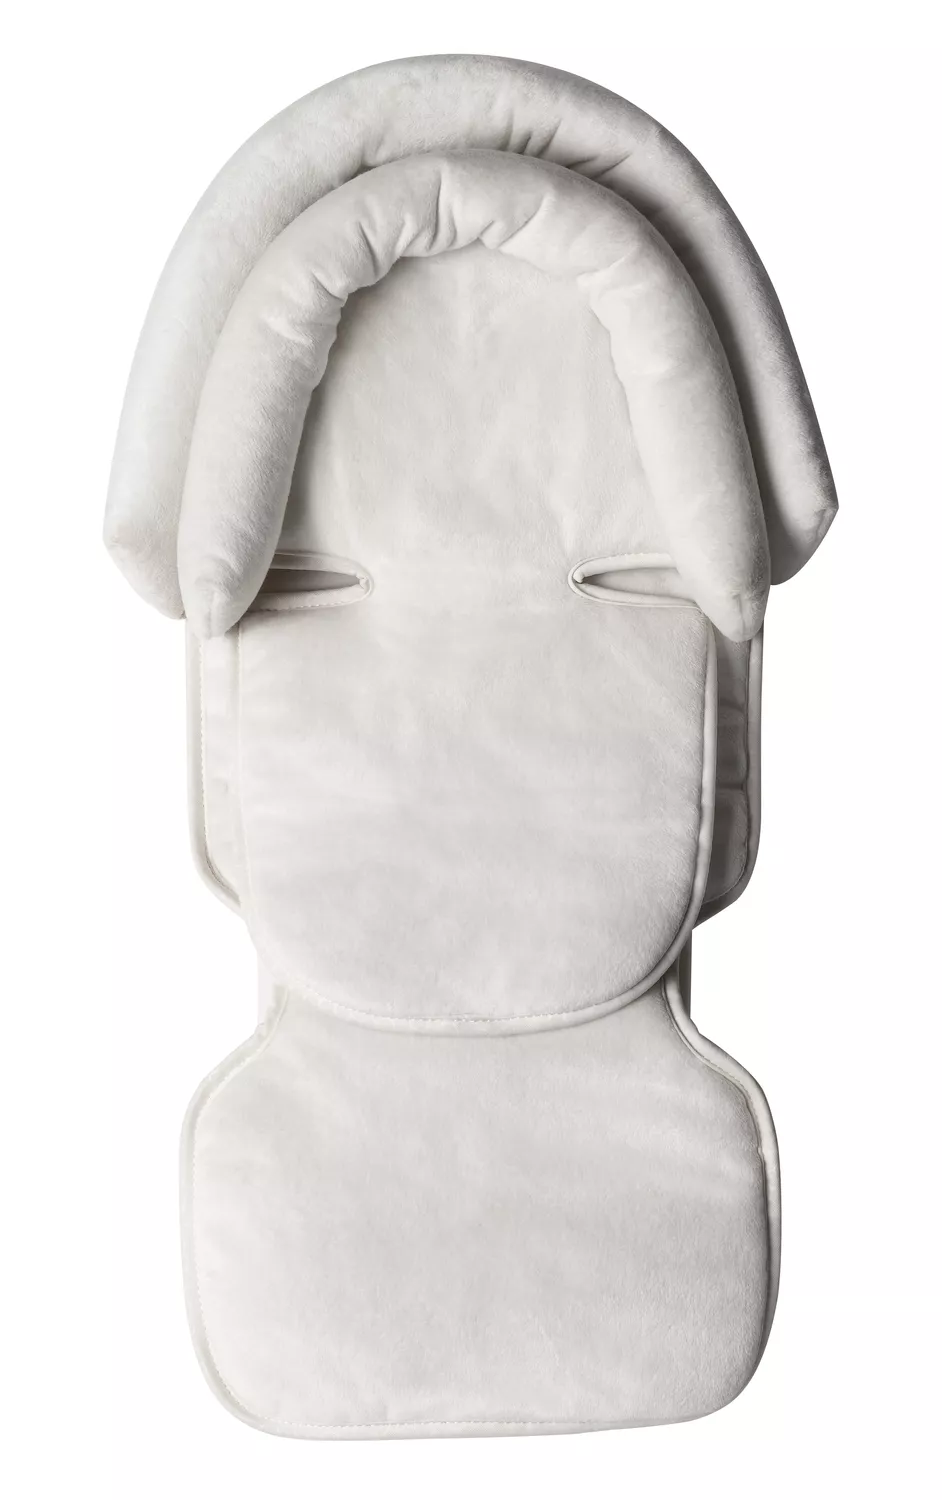 Mima Baby Headrest